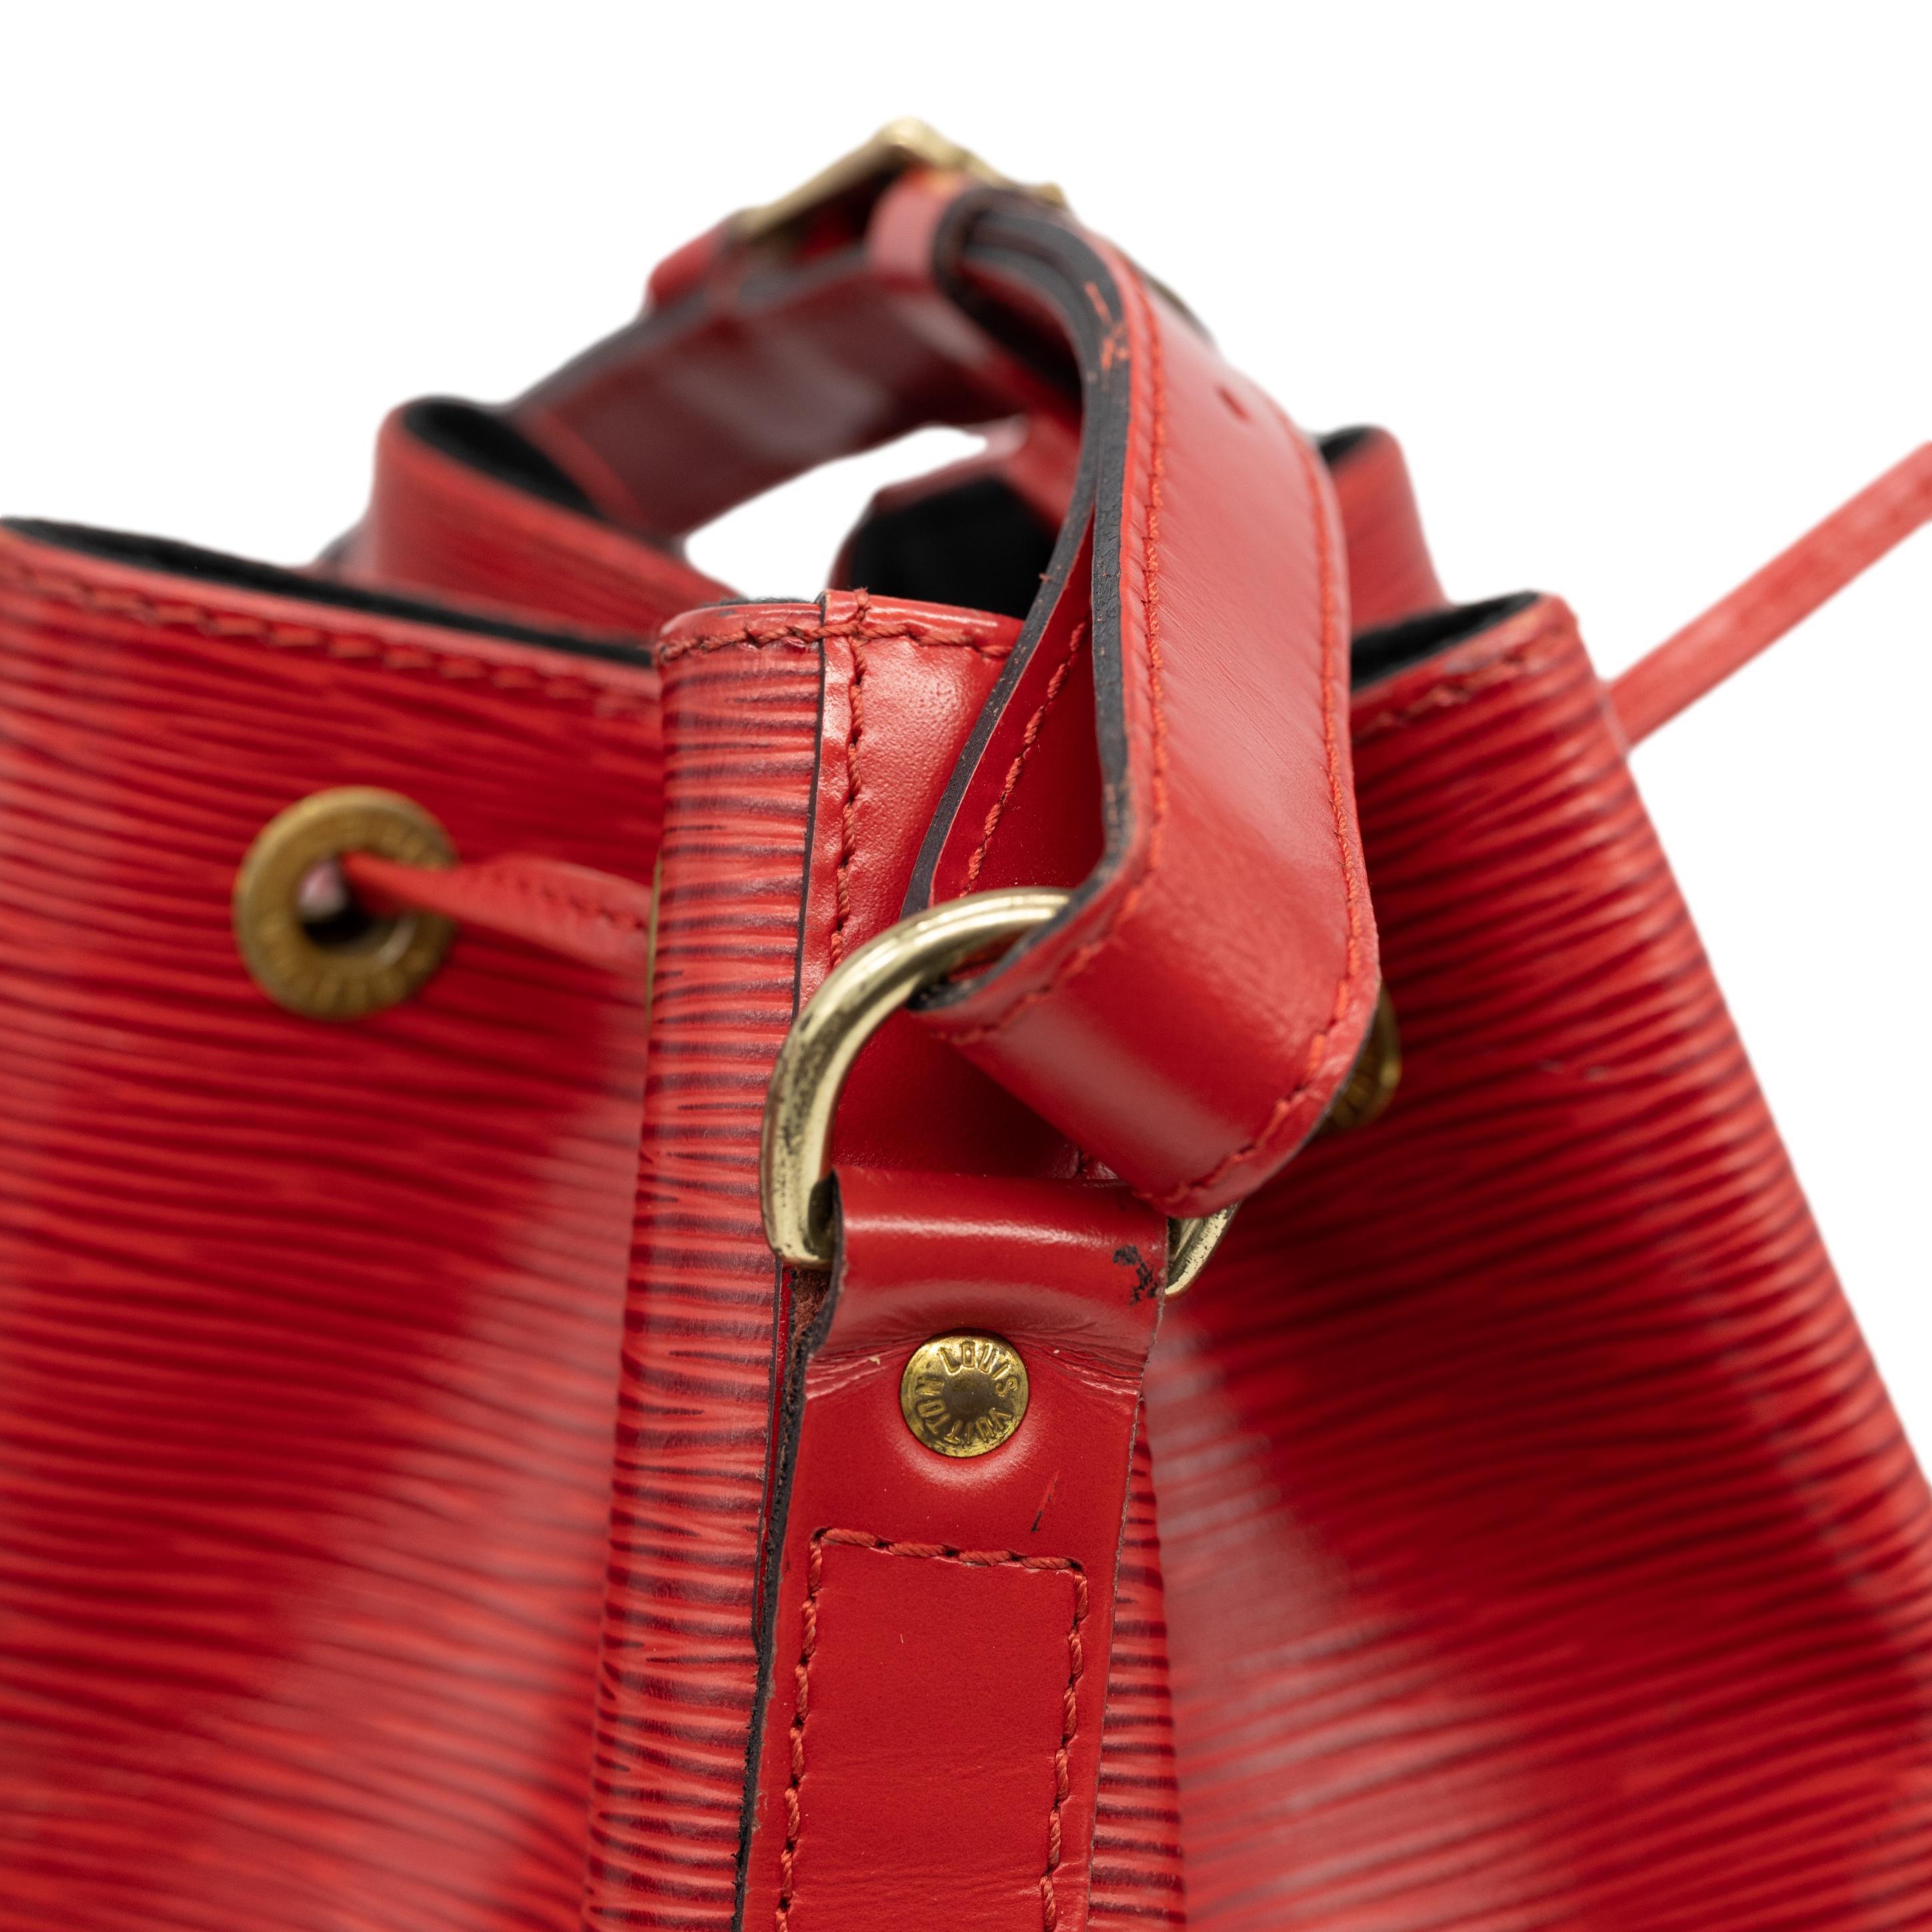 Louis Vuitton “Noe” PM Bucket Bag in Red EPI Leather Shoulder Bag, France 1993. 7